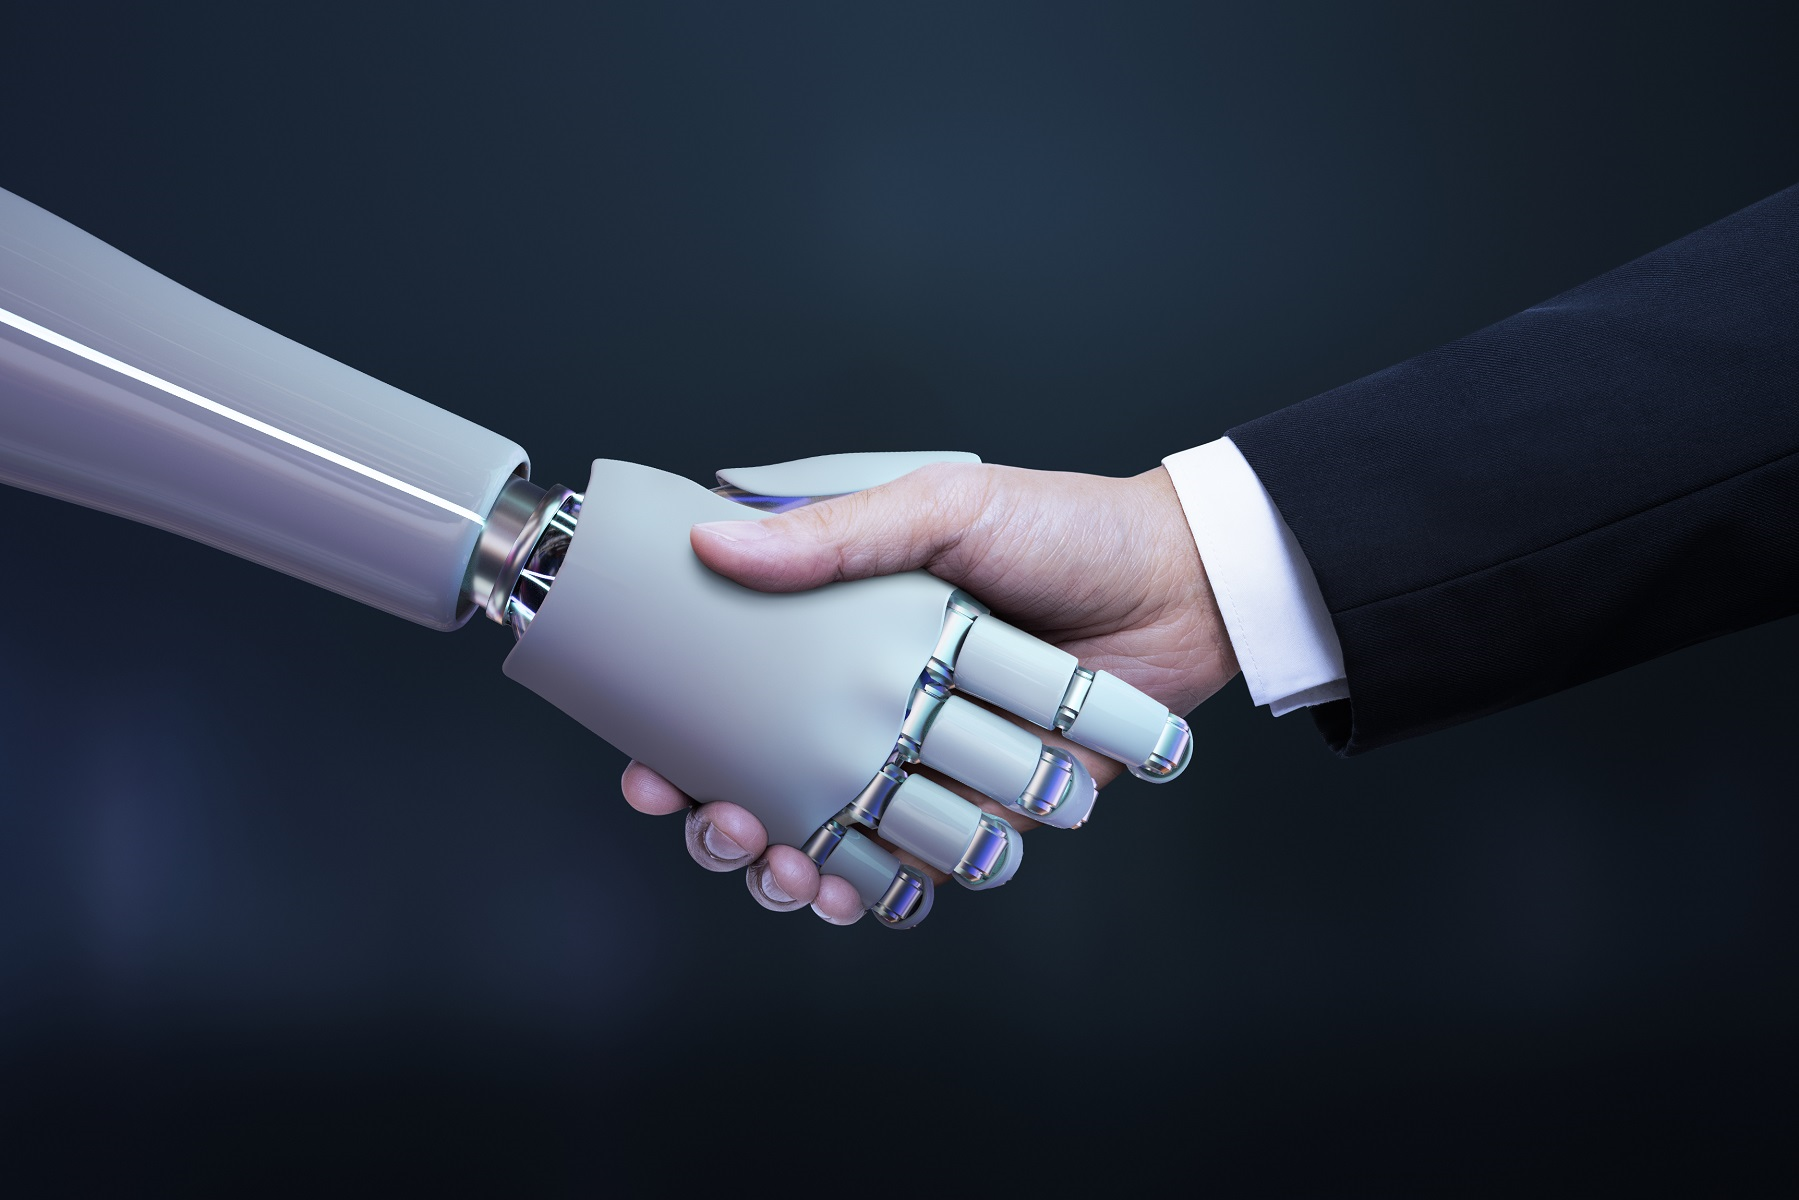 Mão humana e de um robô se cumprimentando.